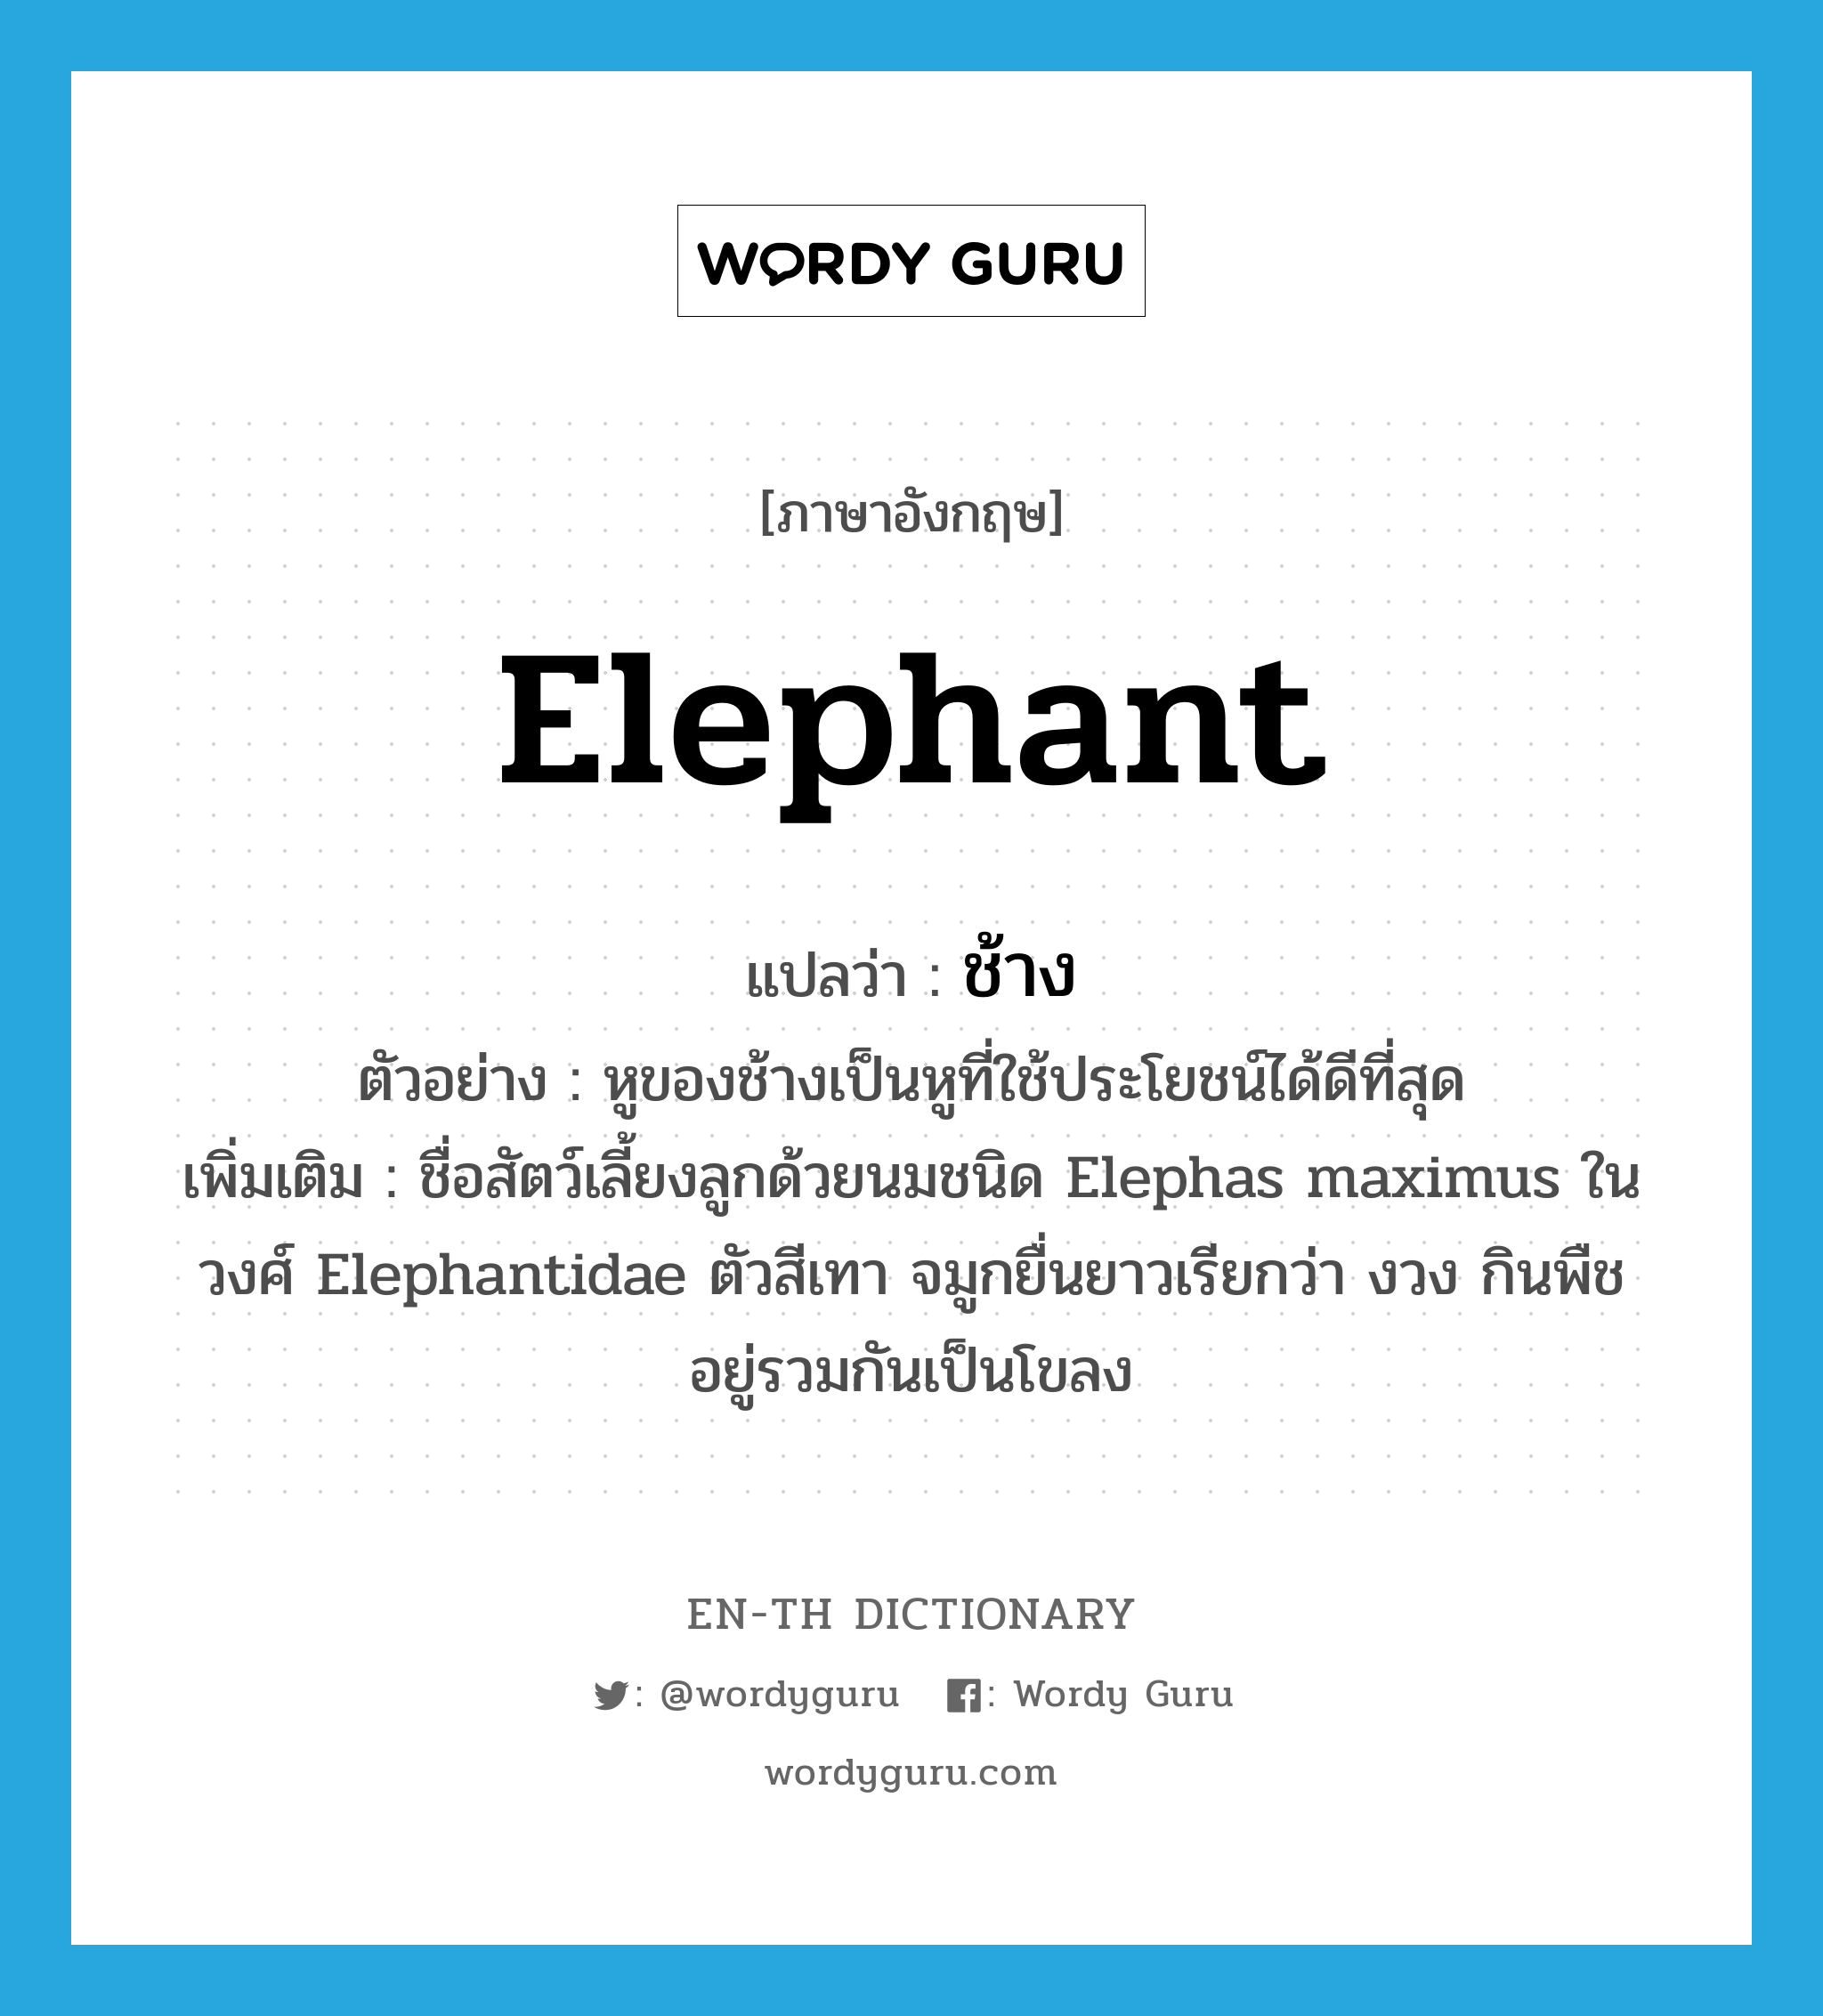 ช้าง ภาษาอังกฤษ?, คำศัพท์ภาษาอังกฤษ ช้าง แปลว่า elephant ประเภท N ตัวอย่าง หูของช้างเป็นหูที่ใช้ประโยชน์ได้ดีที่สุด เพิ่มเติม ชื่อสัตว์เลี้ยงลูกด้วยนมชนิด Elephas maximus ในวงศ์ Elephantidae ตัวสีเทา จมูกยื่นยาวเรียกว่า งวง กินพืช อยู่รวมกันเป็นโขลง หมวด N